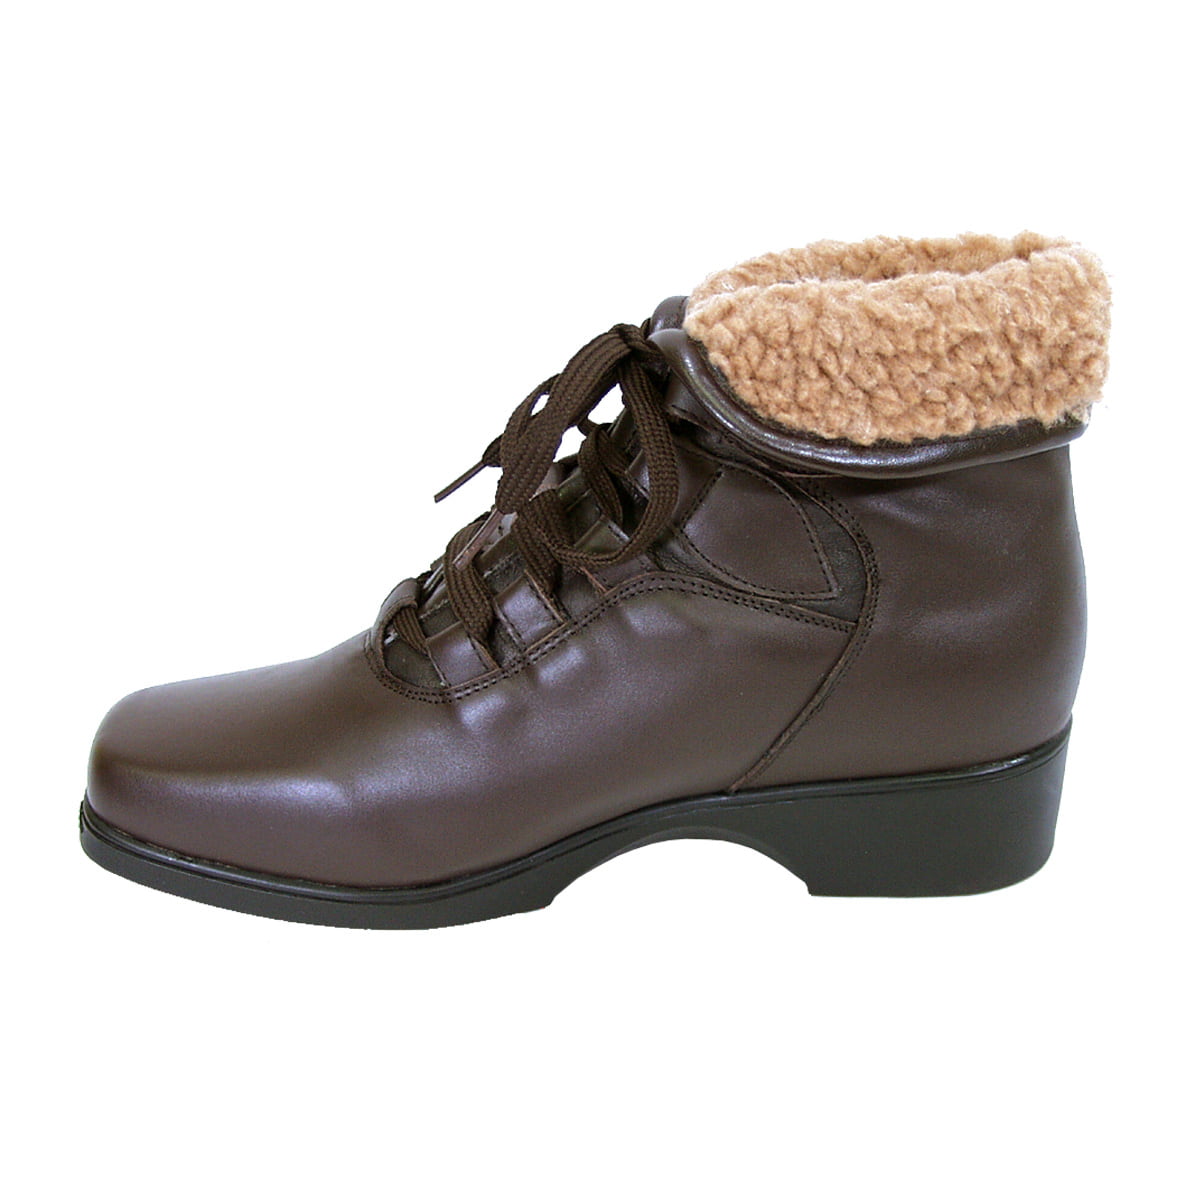 eddie bauer hazel women's winter boots